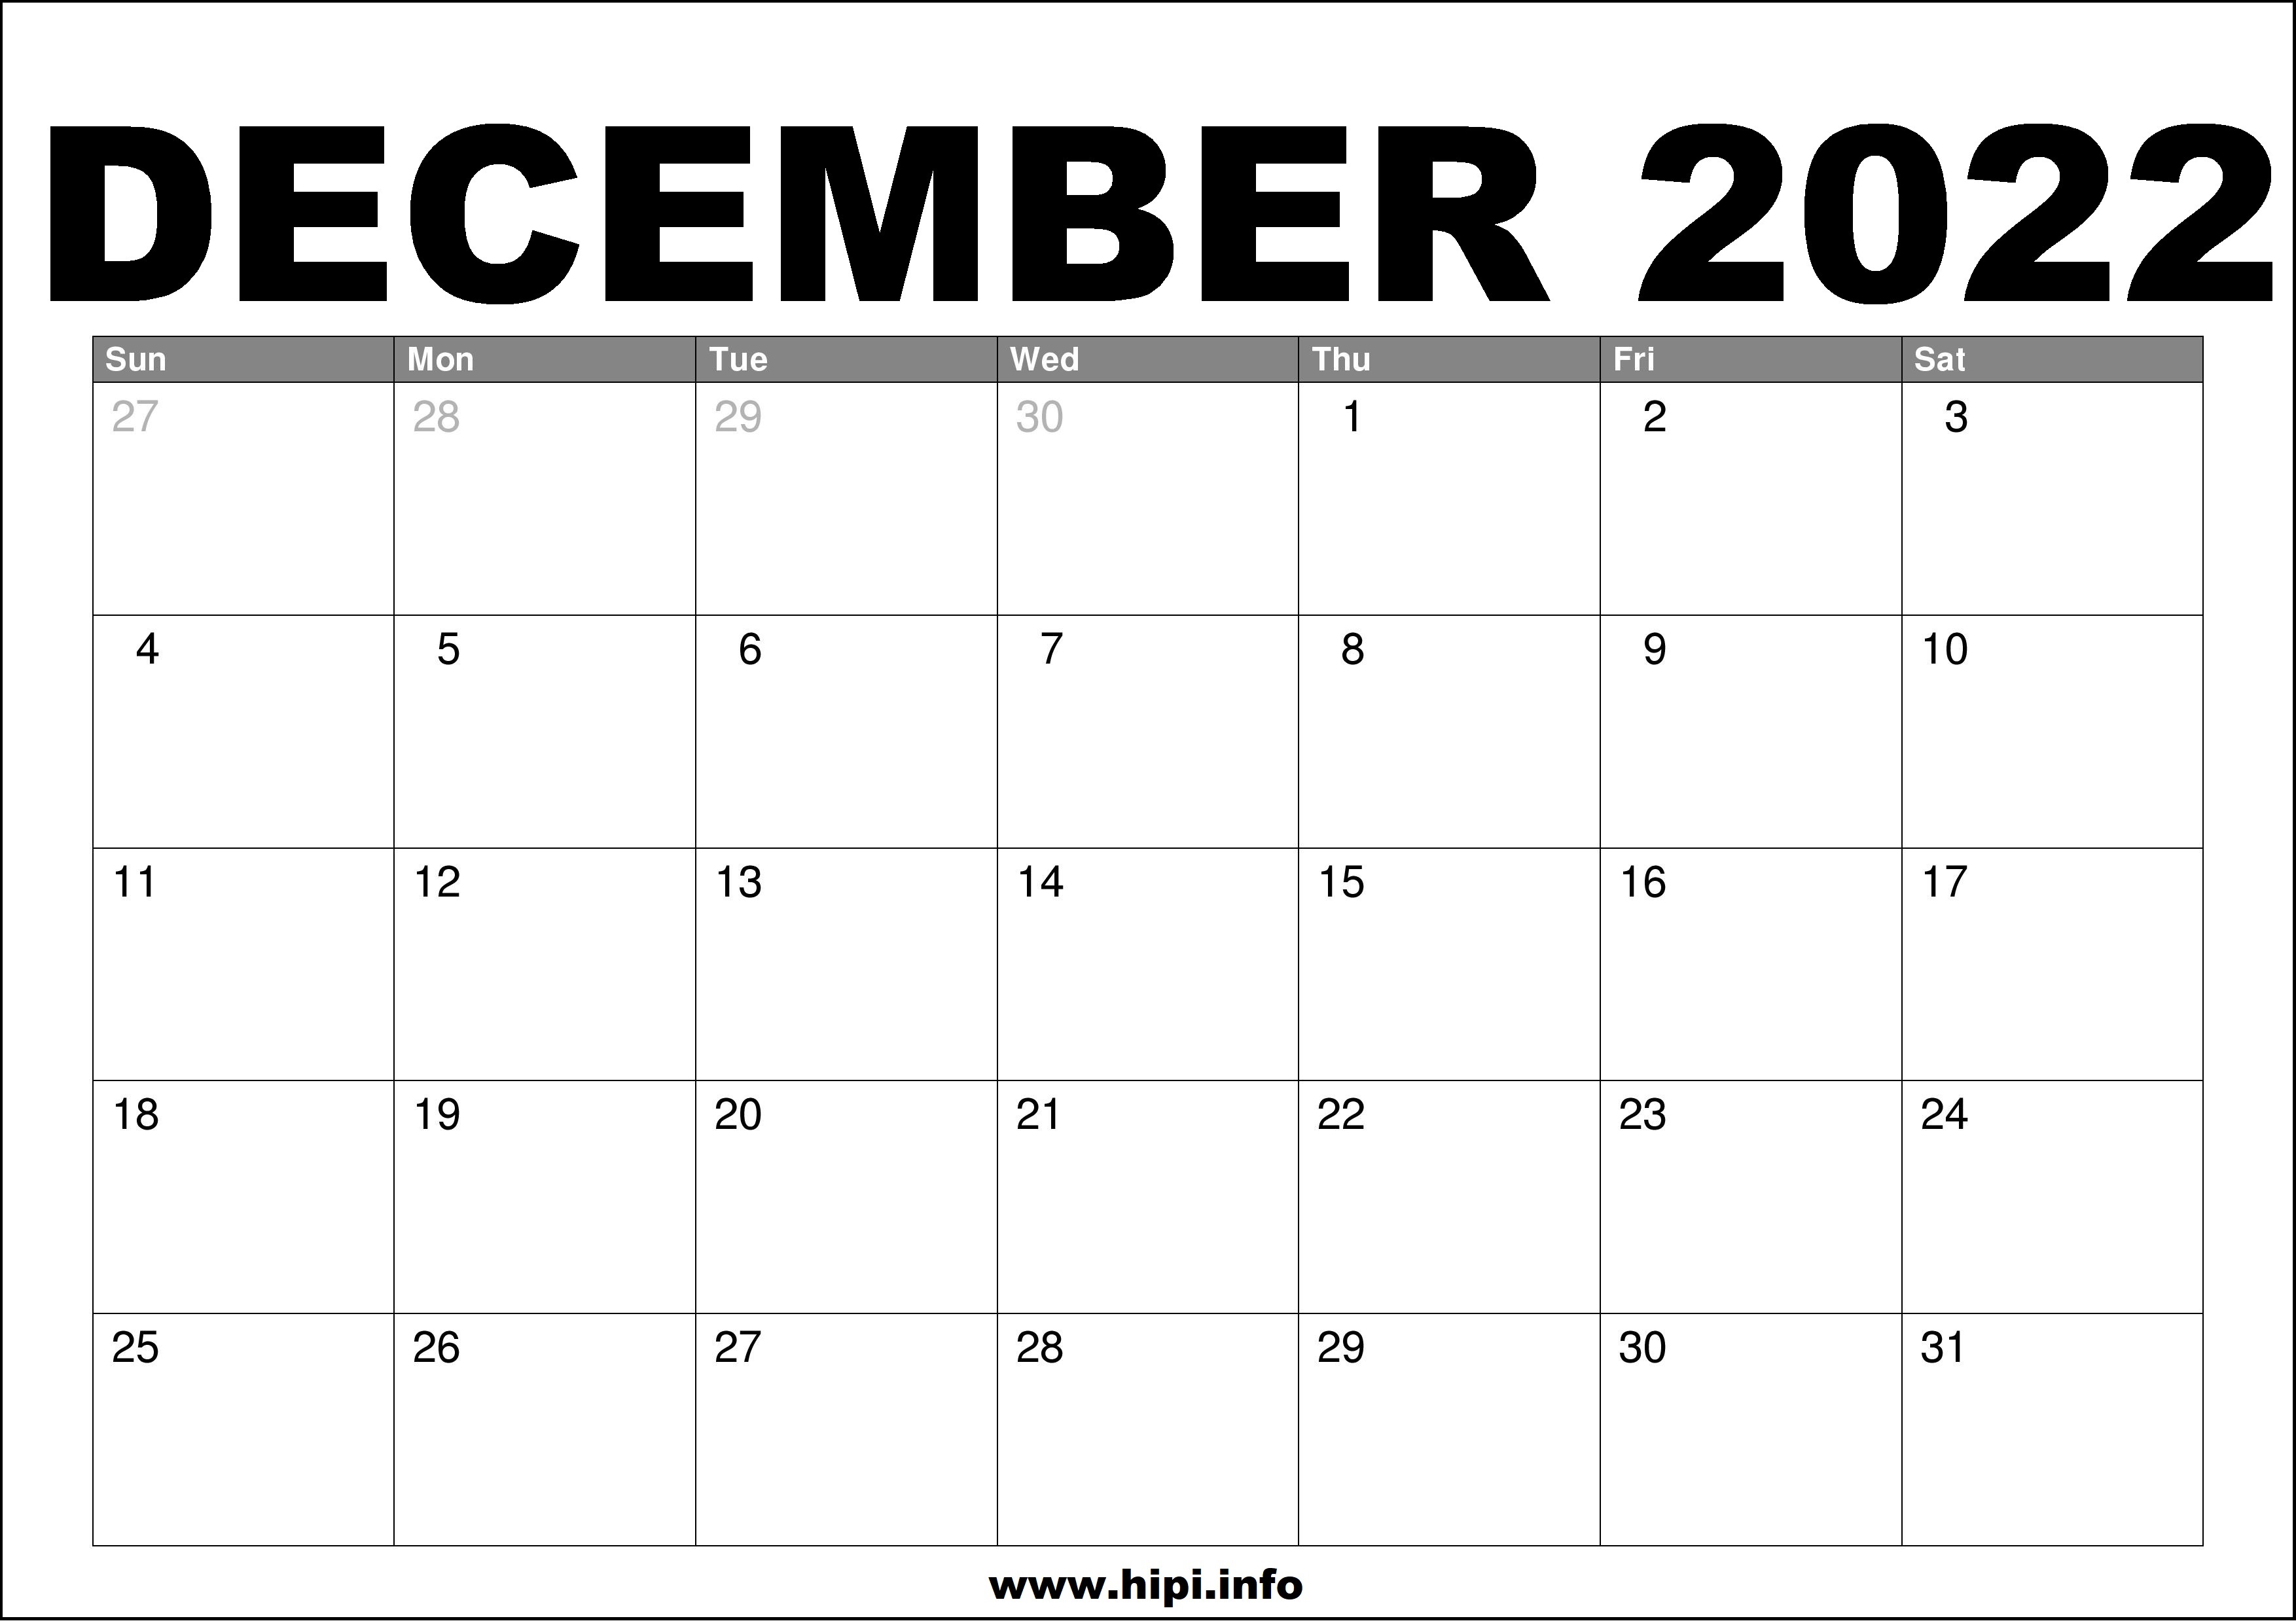 Free December 2022 Calendar December 2022 Calendar Printable Free - Hipi.info | Calendars Printable Free